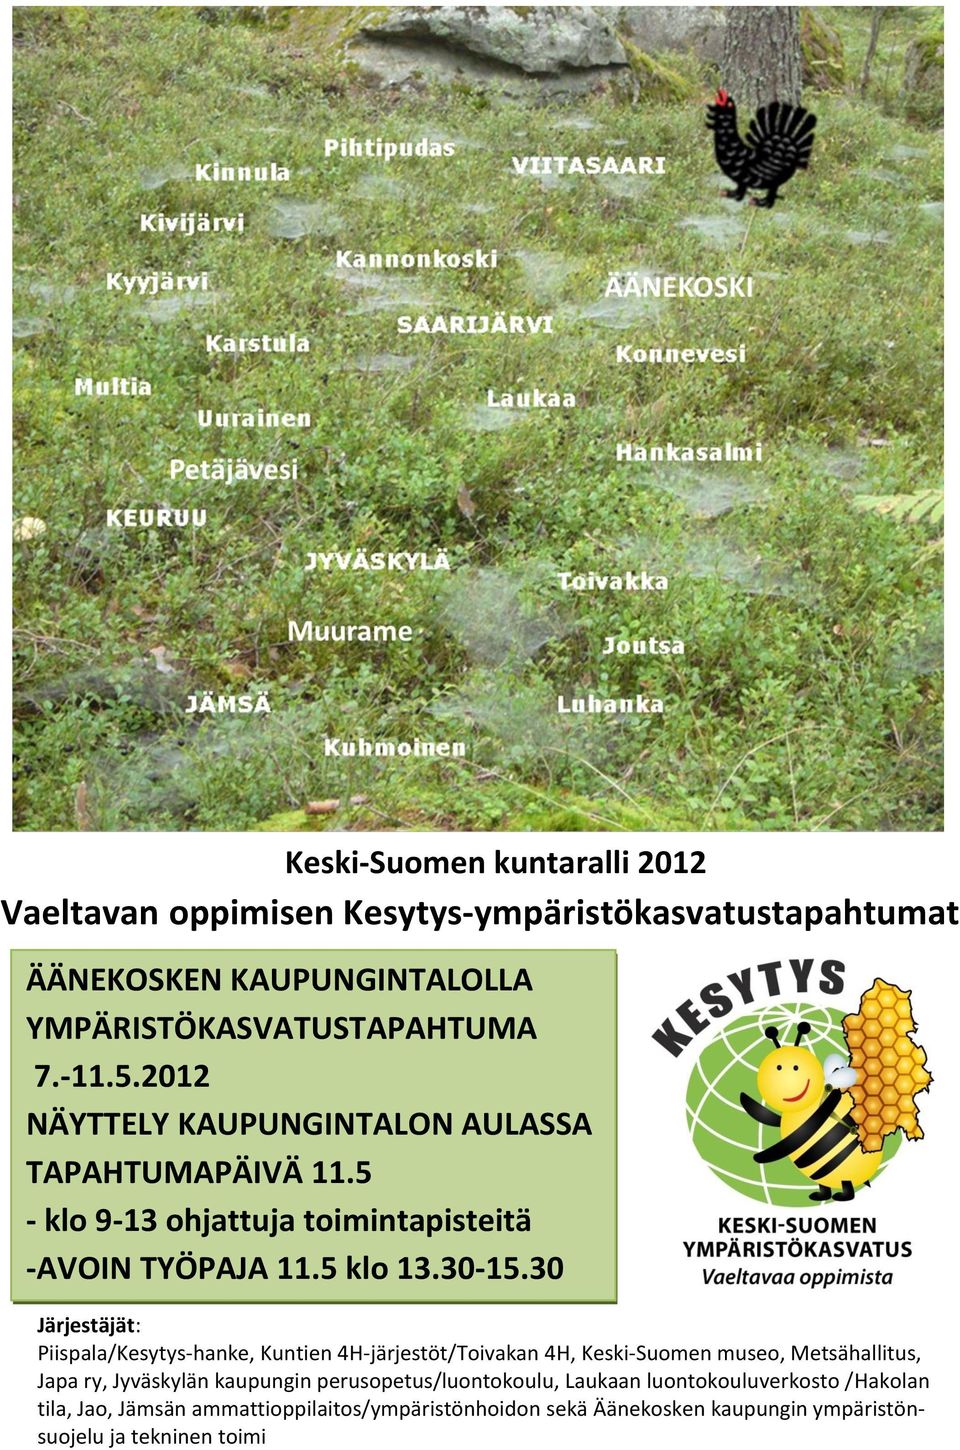 30 Järjestäjät: Piispala/Kesytys-hanke, Kuntien 4H-järjestöt/Toivakan 4H, Keski-Suomen museo, Metsähallitus, Japa ry, Jyväskylän kaupungin